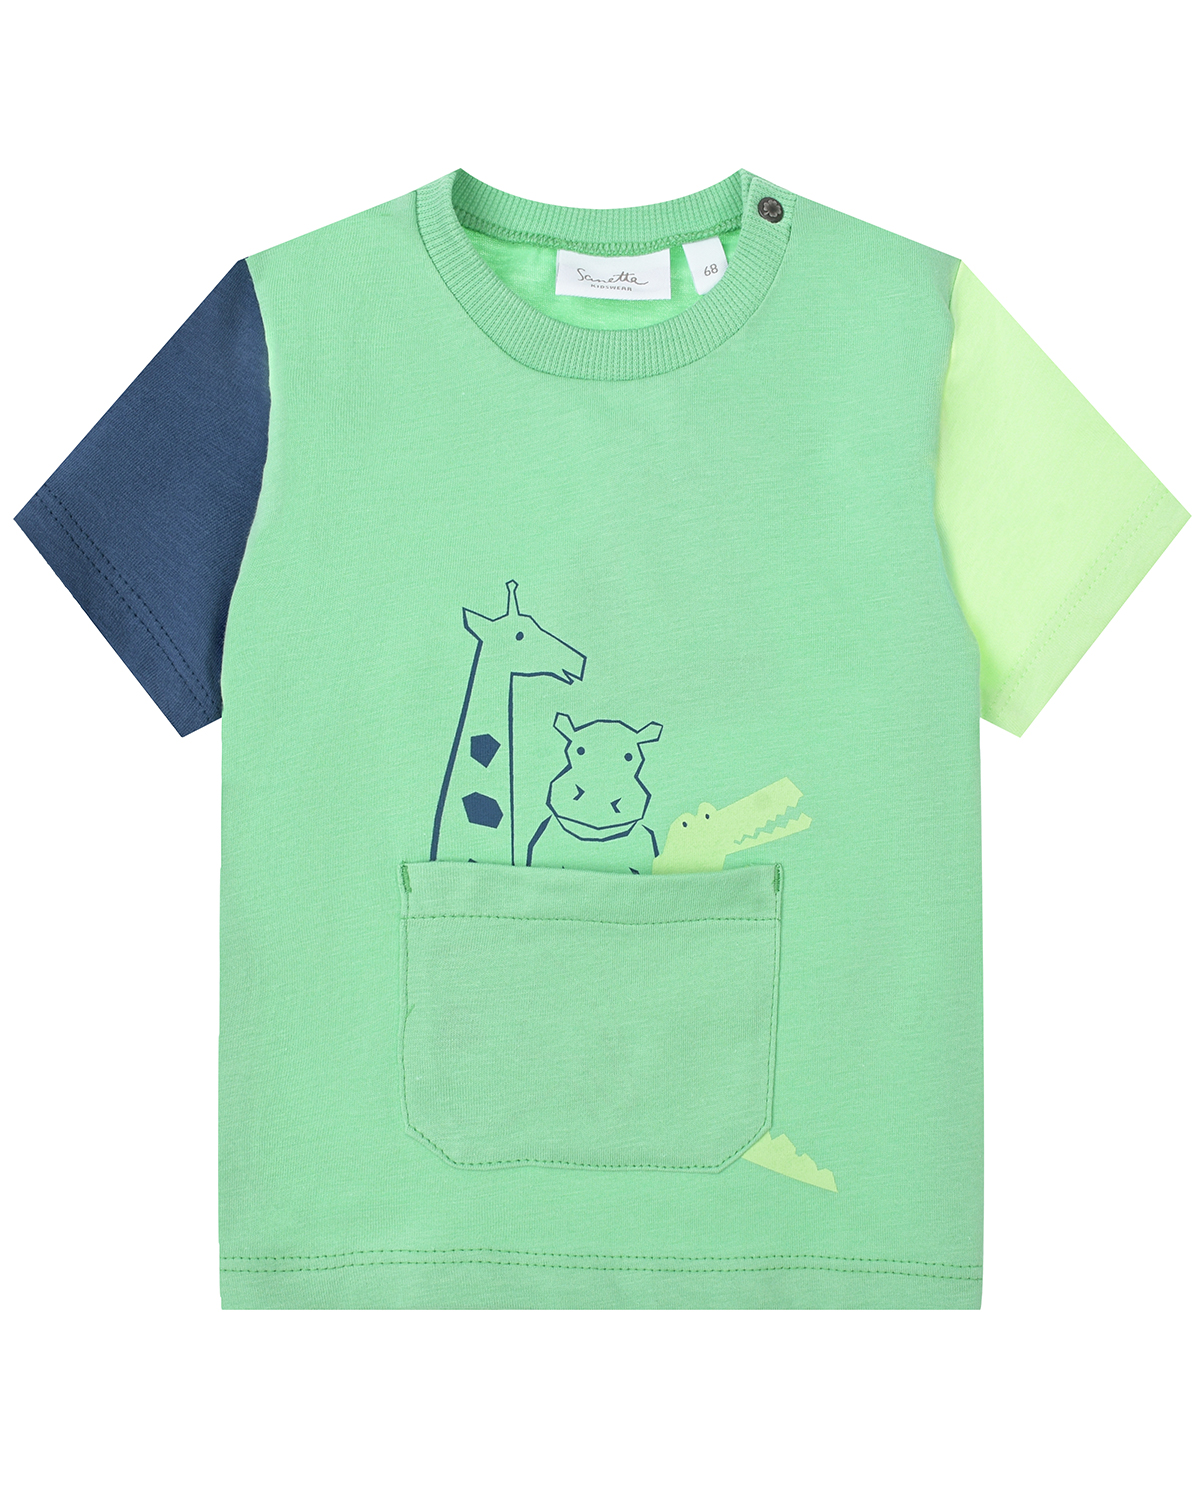 Зеленая футболка с накладным карманом Sanetta Kidswear игровая приставка pgp aio junior fc25 зеленая модель fc25b